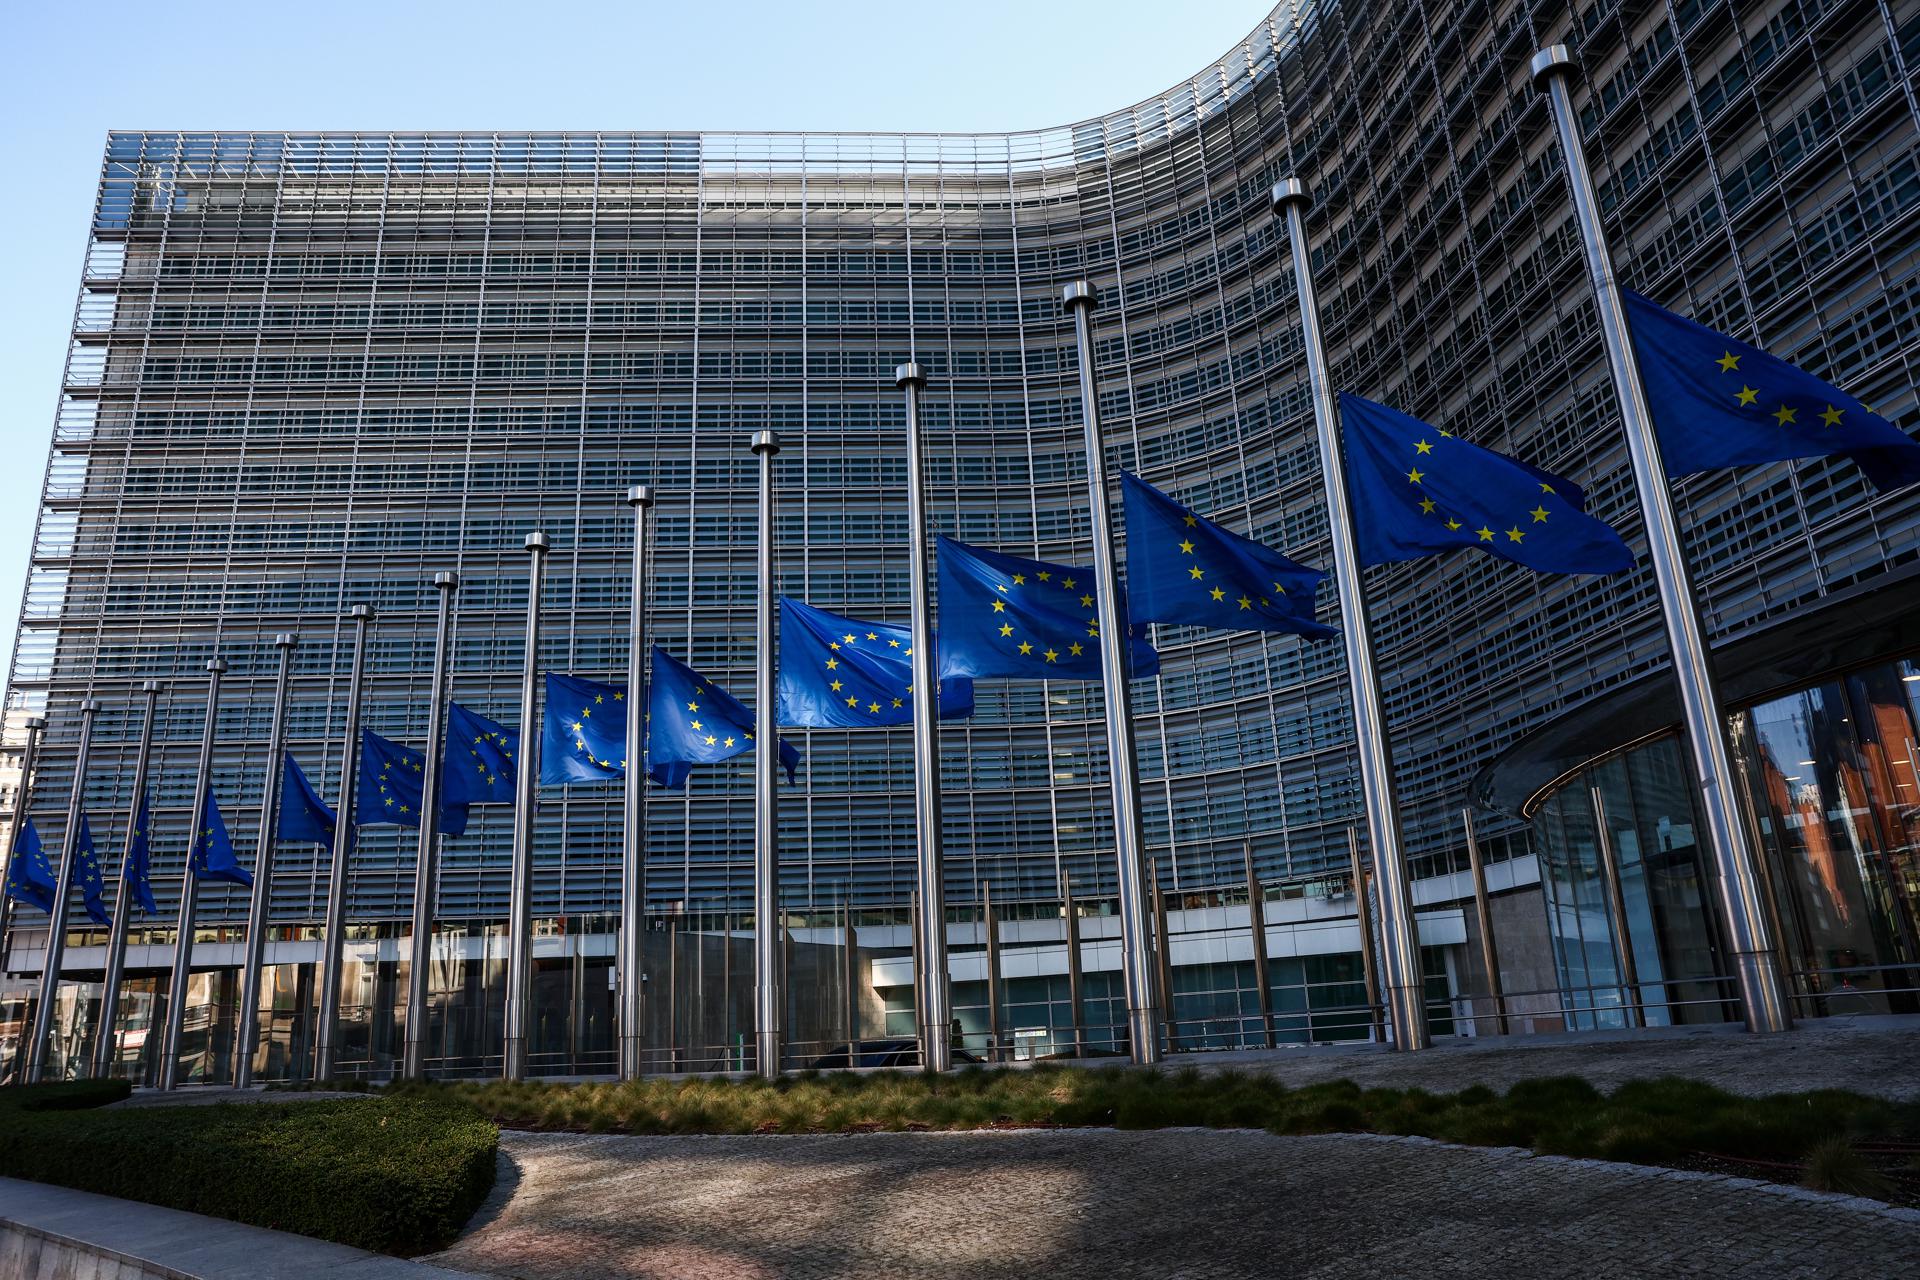 Foto de archivo del edificio de la Comisión Europea en Bruselas. EFE/EPA/Stephanie Lecocq